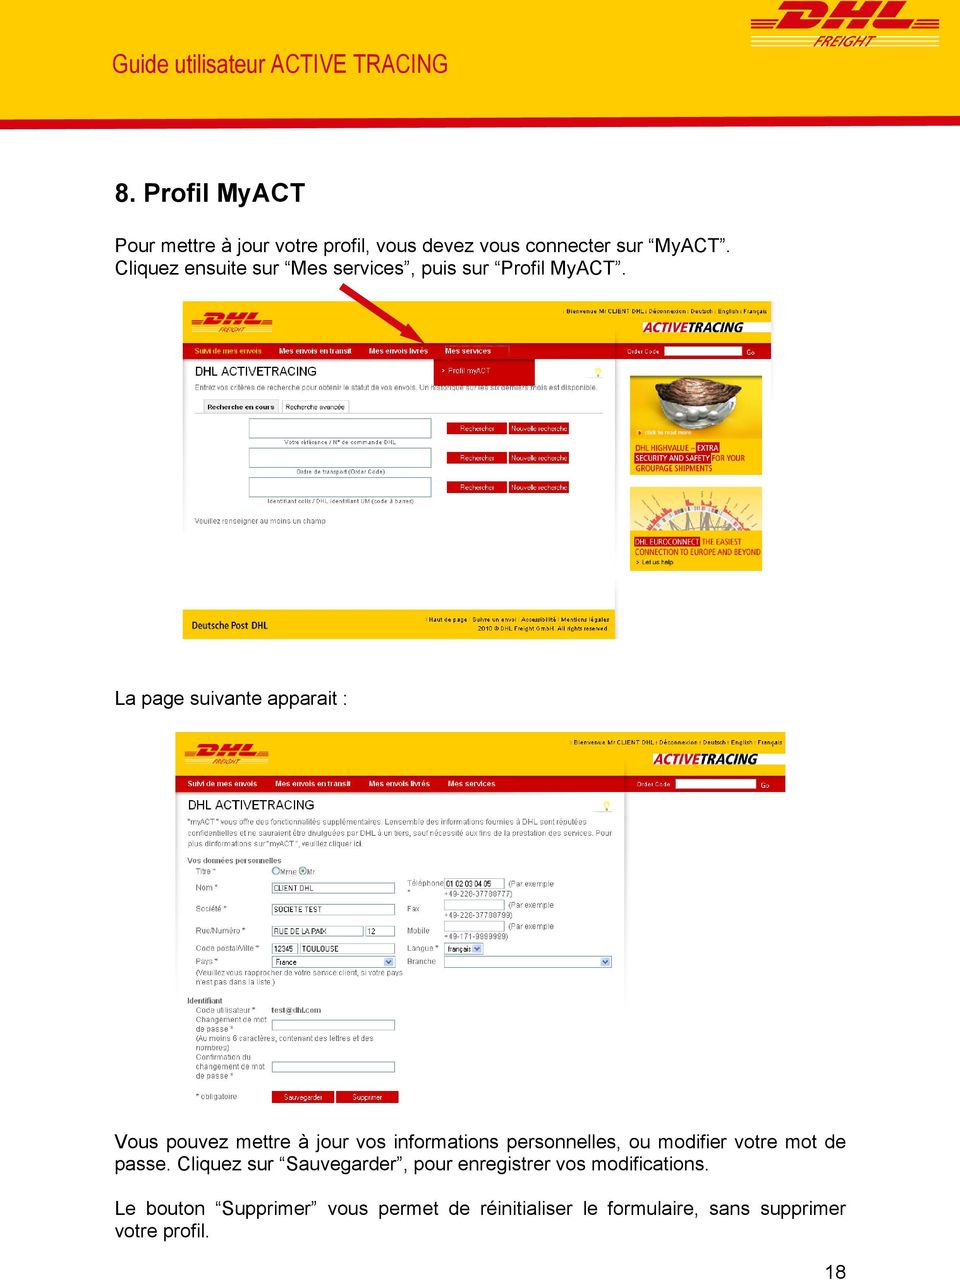 Cliquez ensuite sur Mes services, puis sur Profil MyACT.